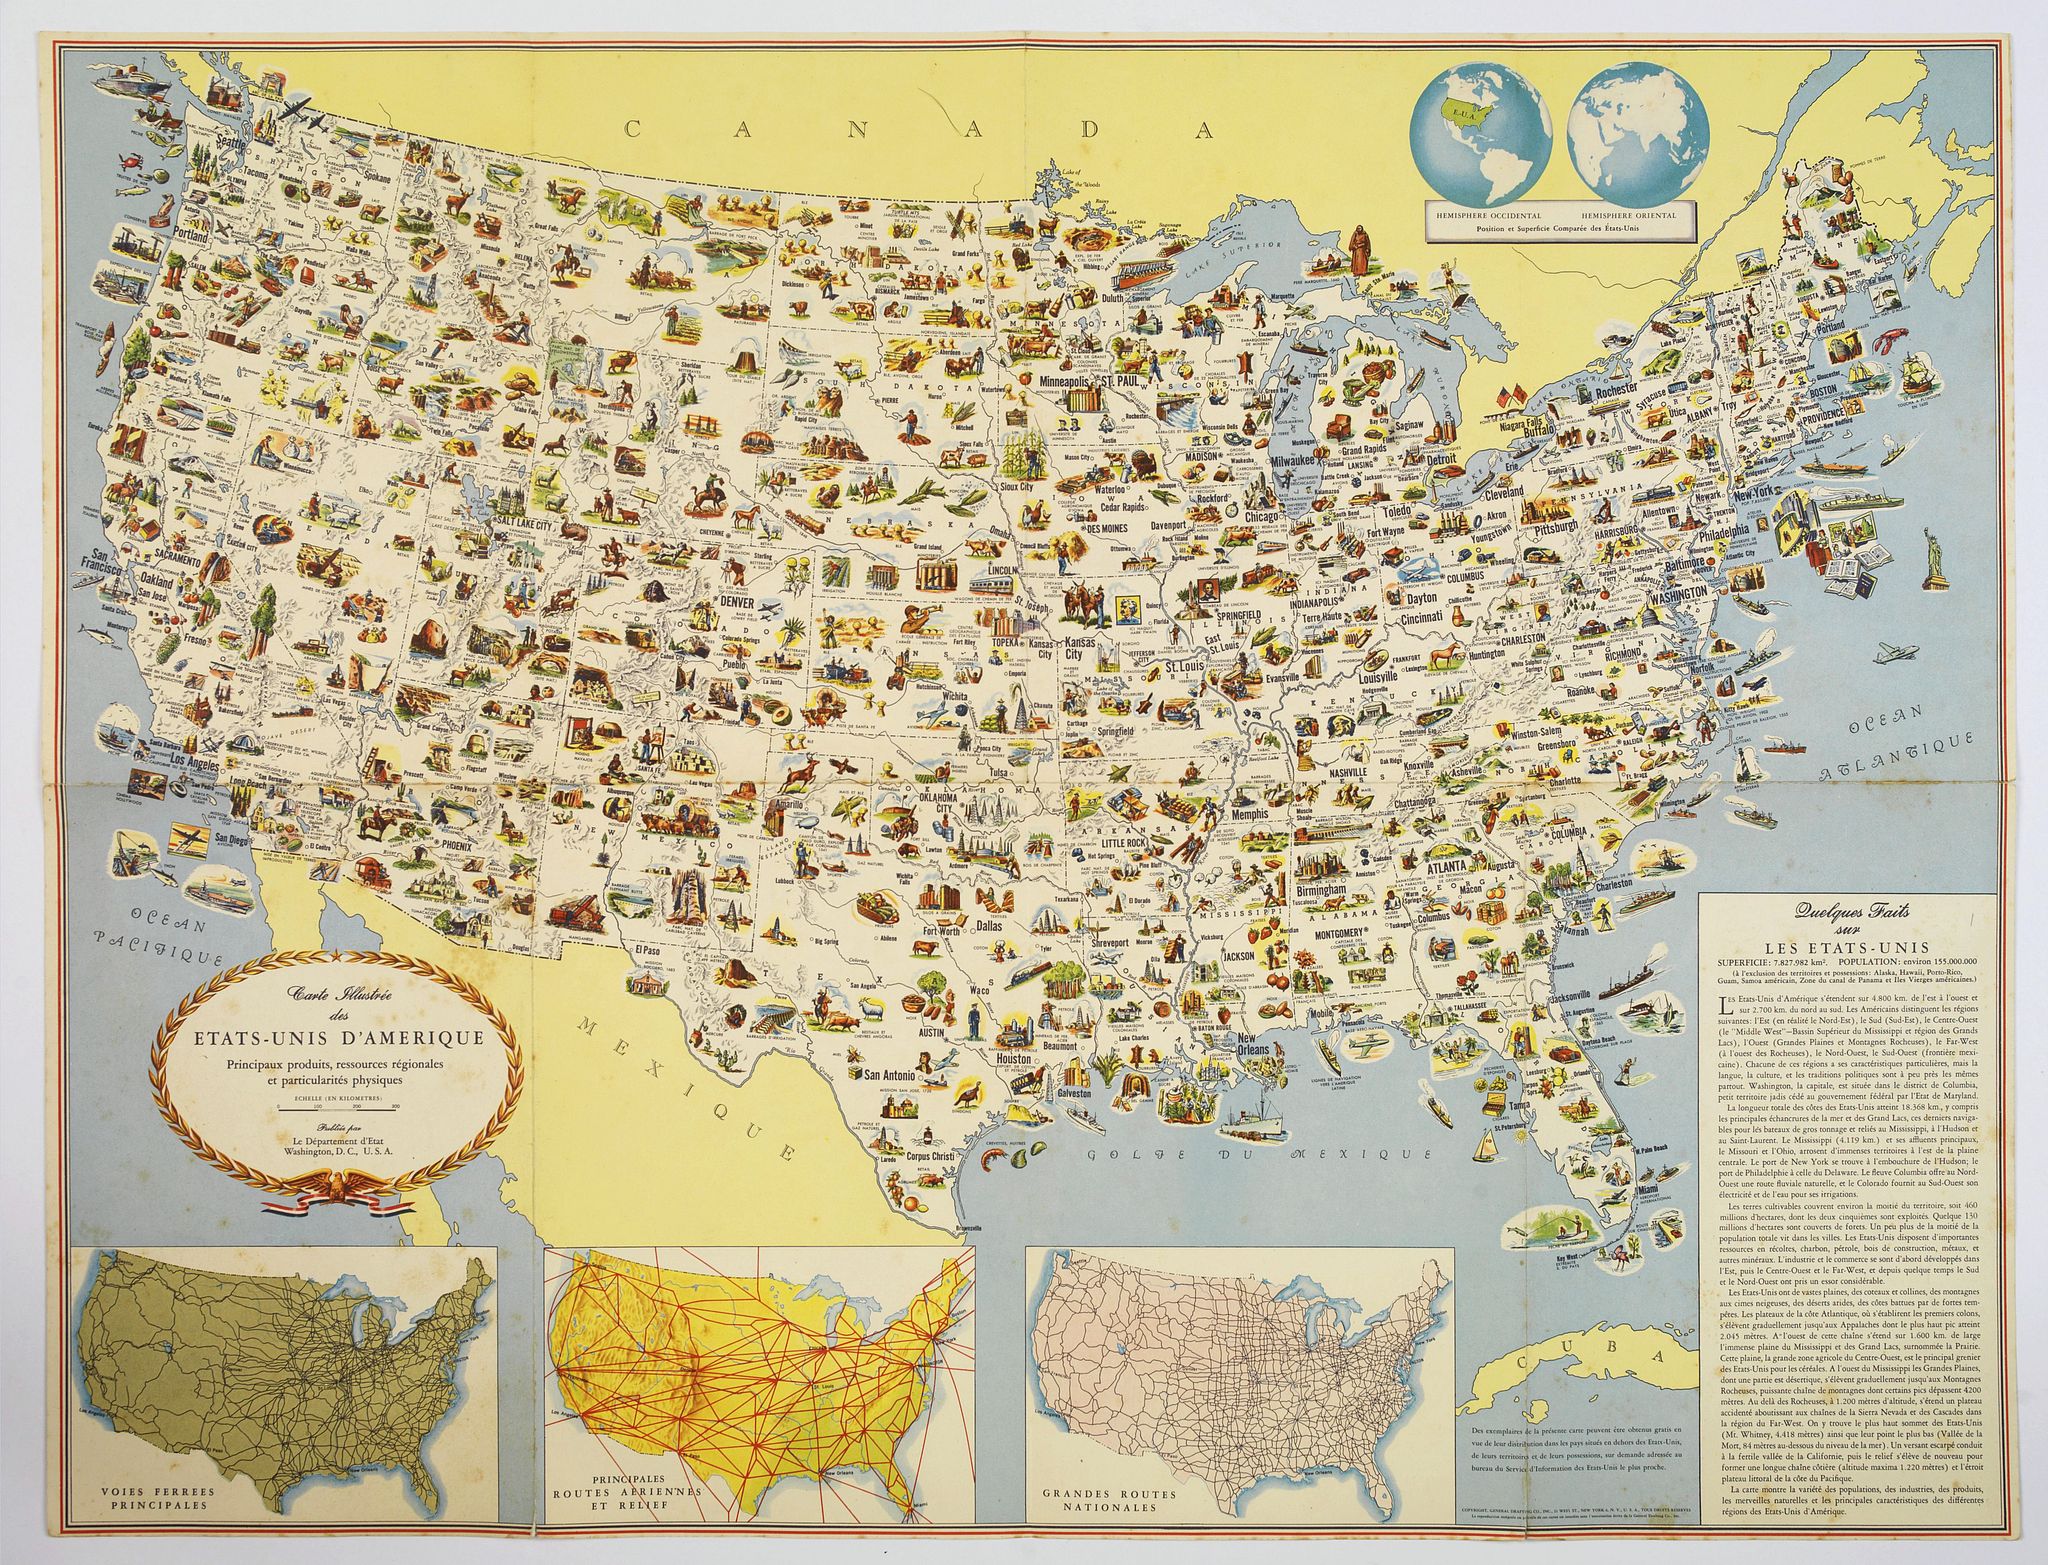 Carte Illustree des Etats-Unis d'Amerique Principaux produits, resources regionales, et particularites physiques